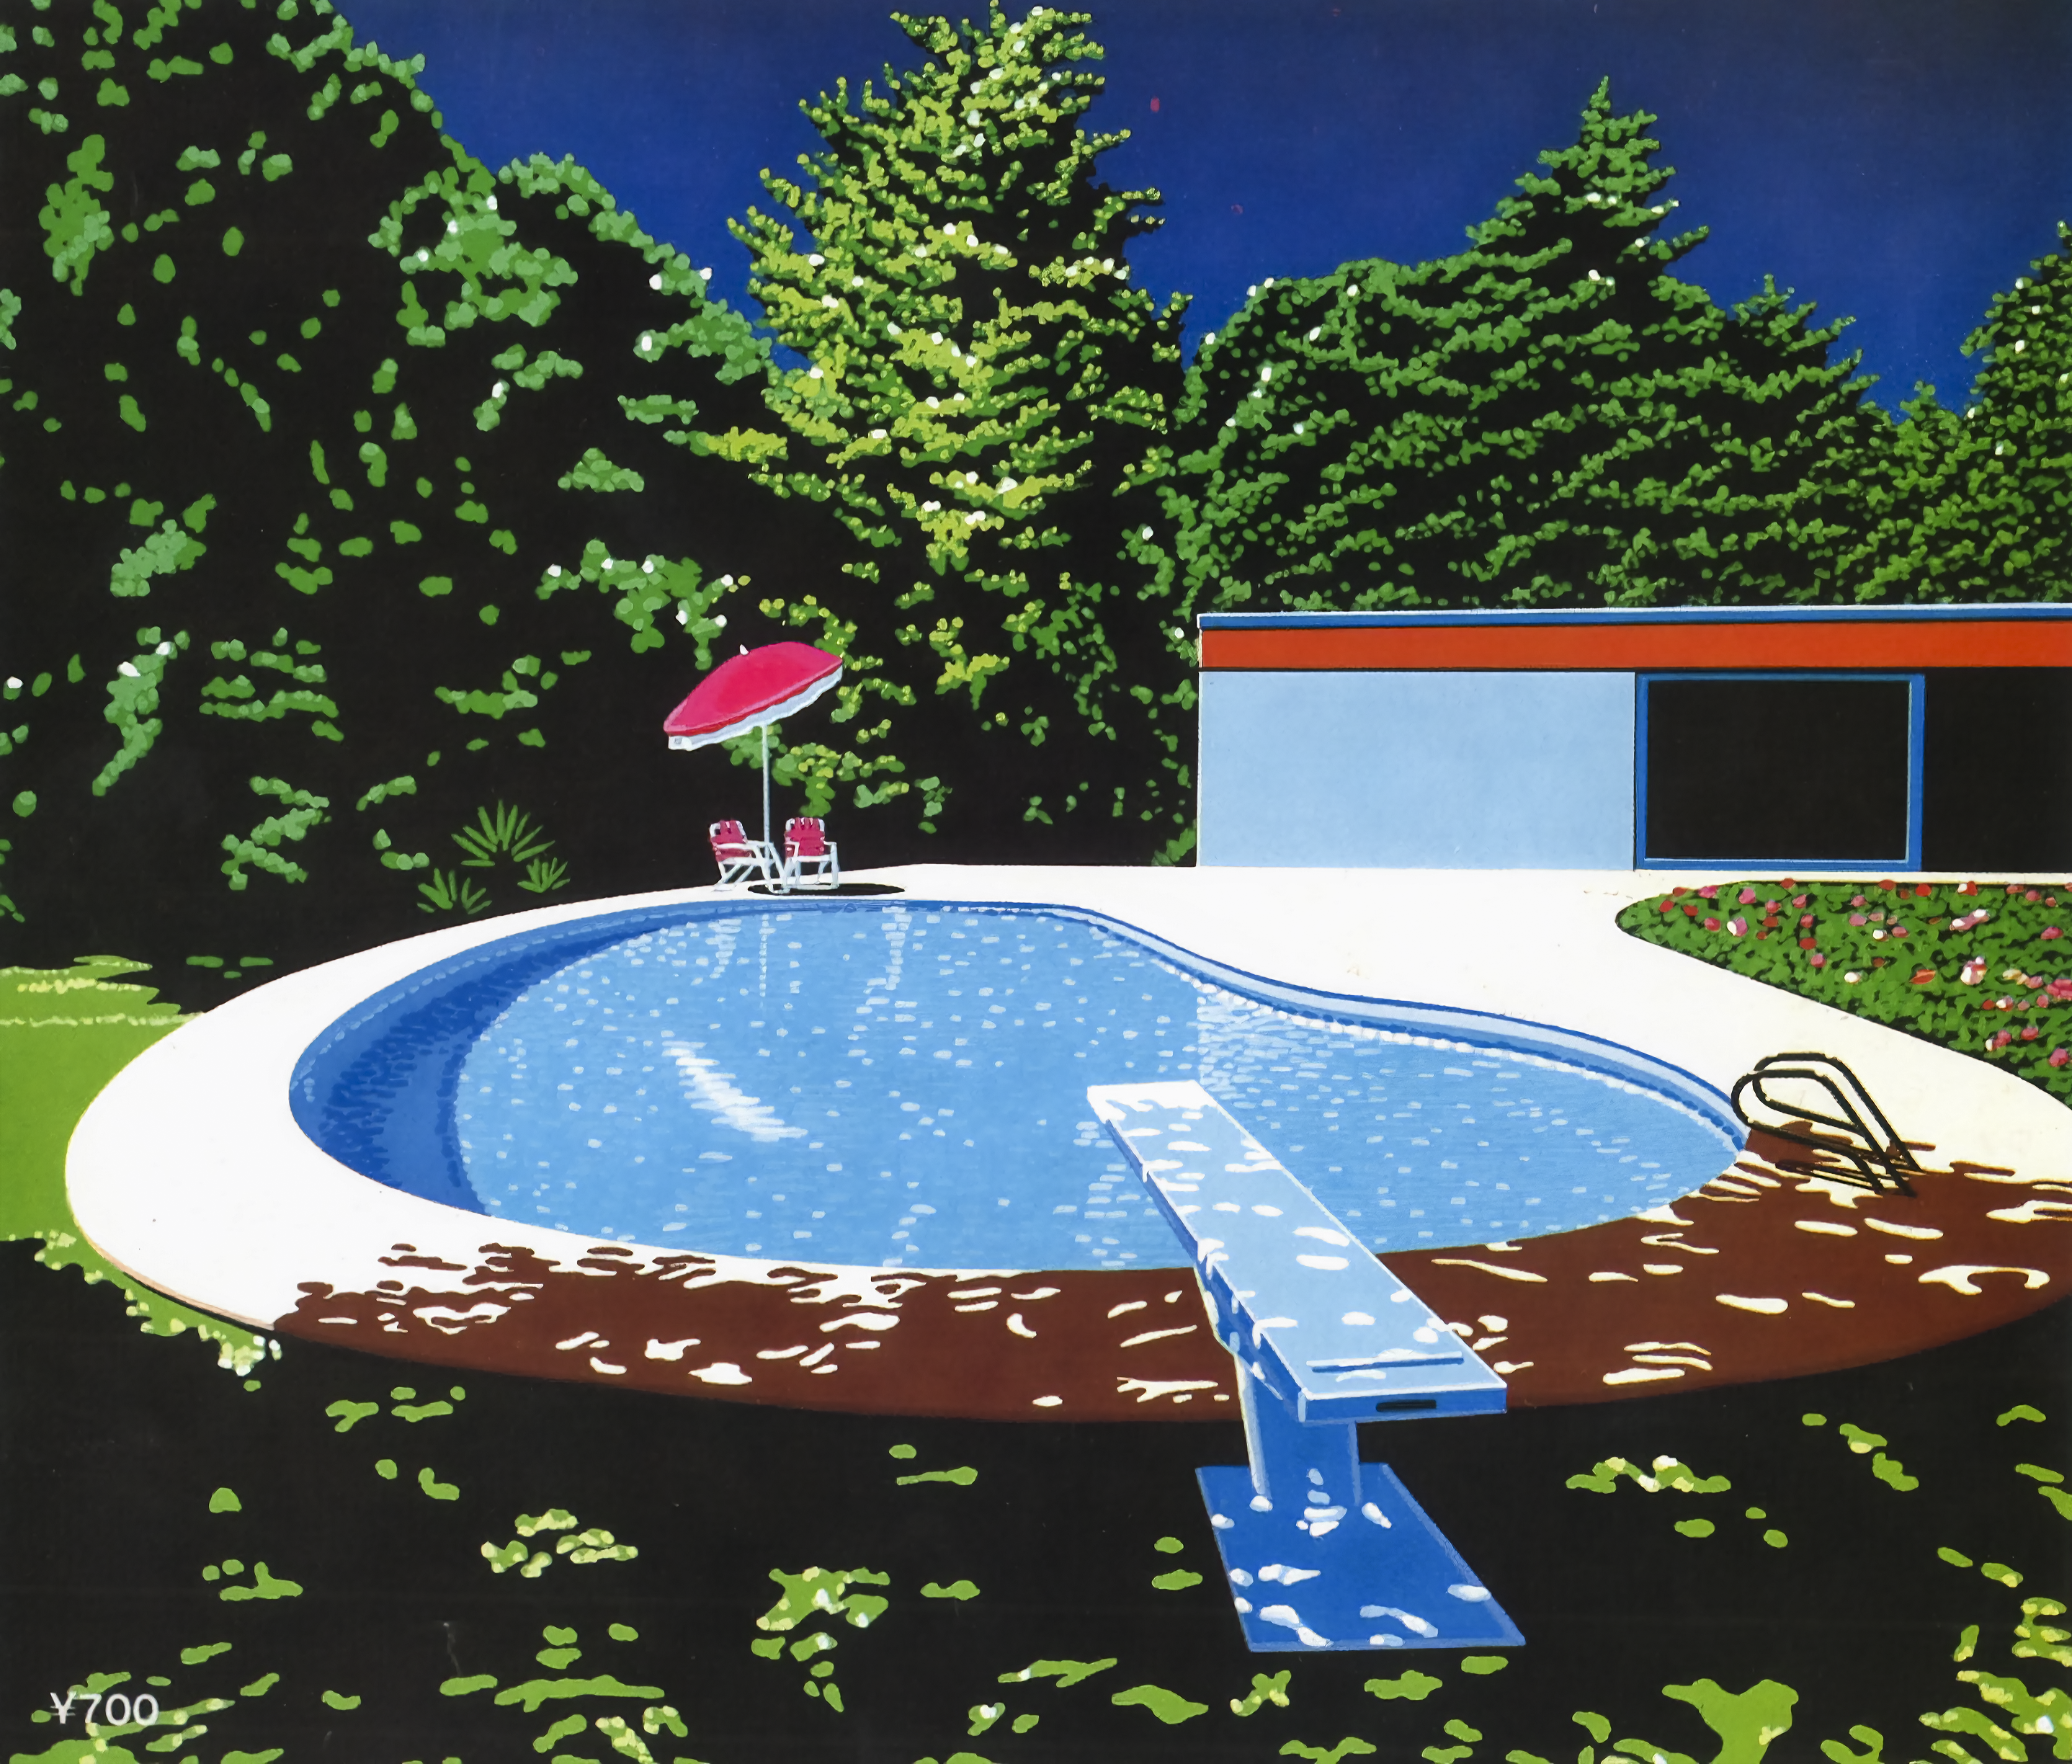 General 2876x2448 Hiroshi Nagai retrowave painting swimming pool digital art